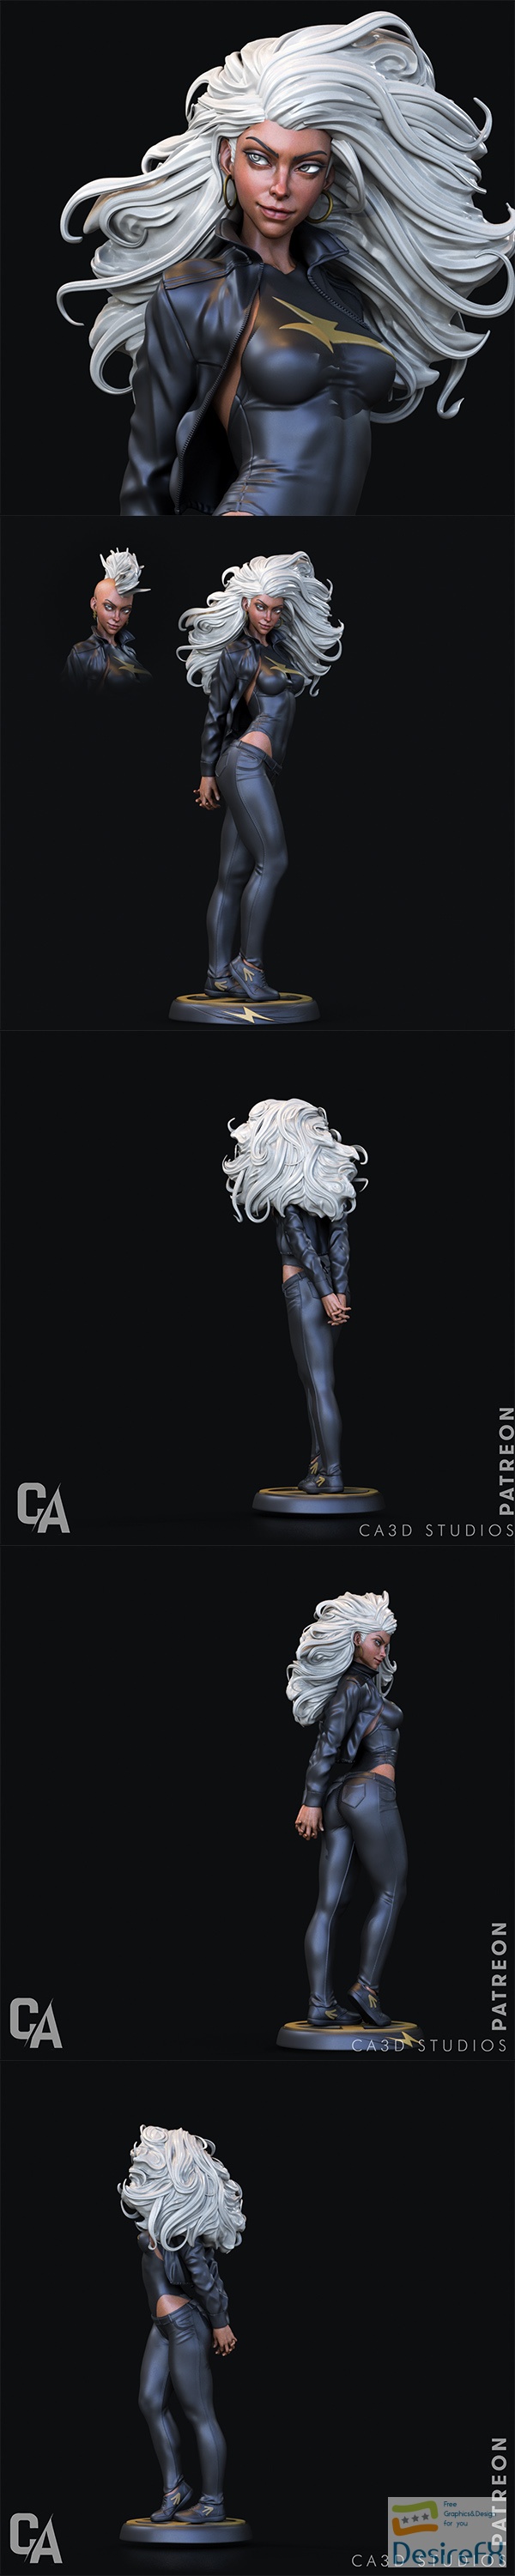 Ca 3d Studios – Storm – 3D Print